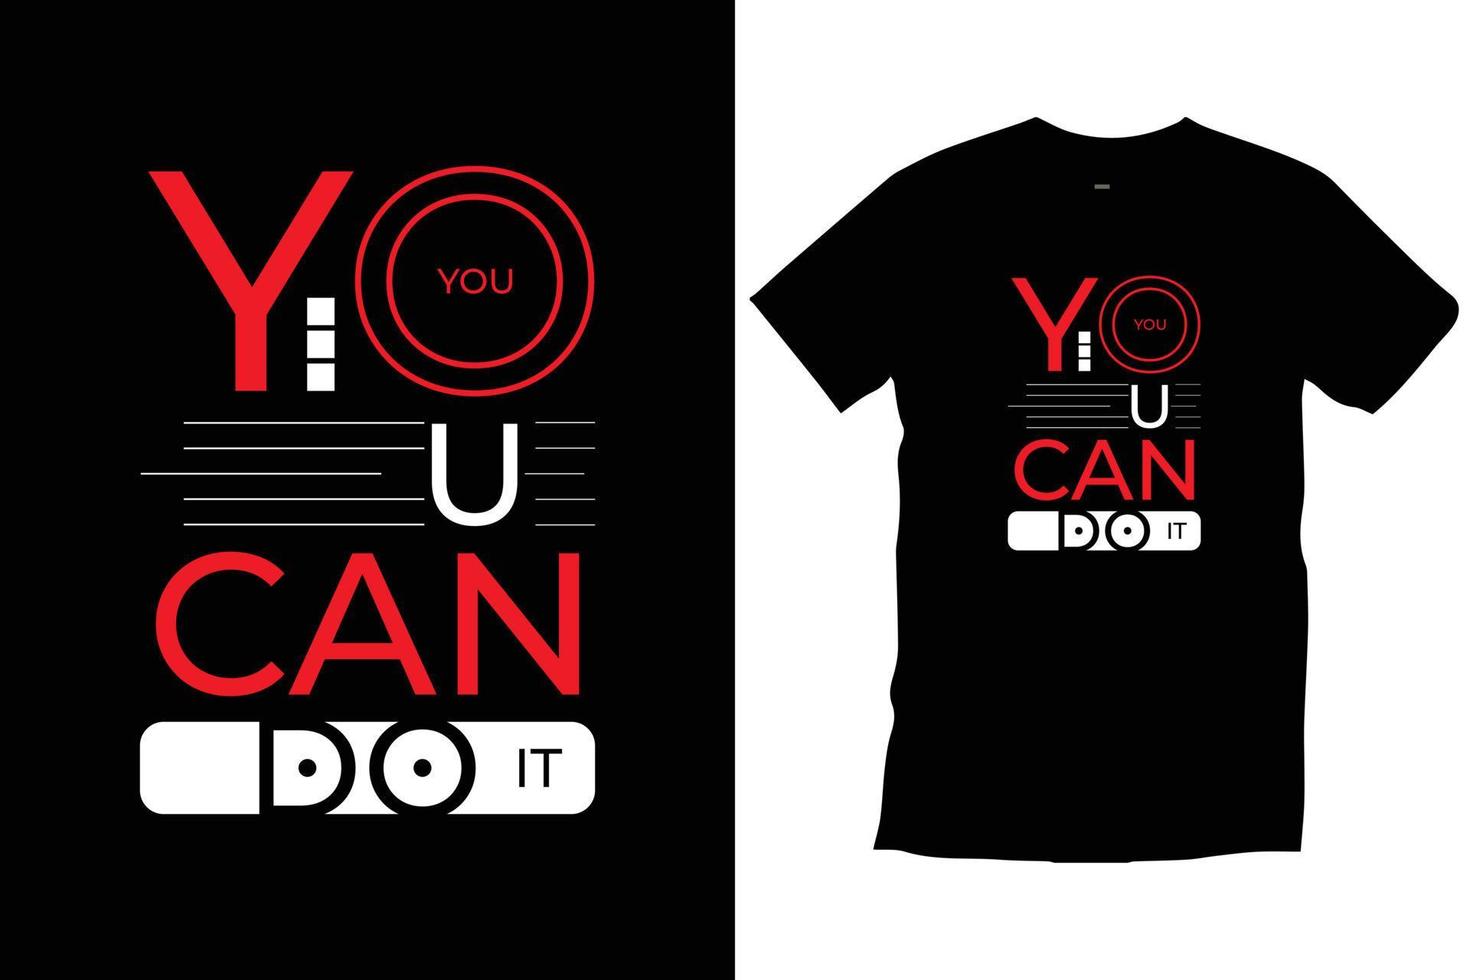 tu peux le faire. citations modernes motivation inspirante typographie cool vecteur de conception de t-shirt noir tendance.